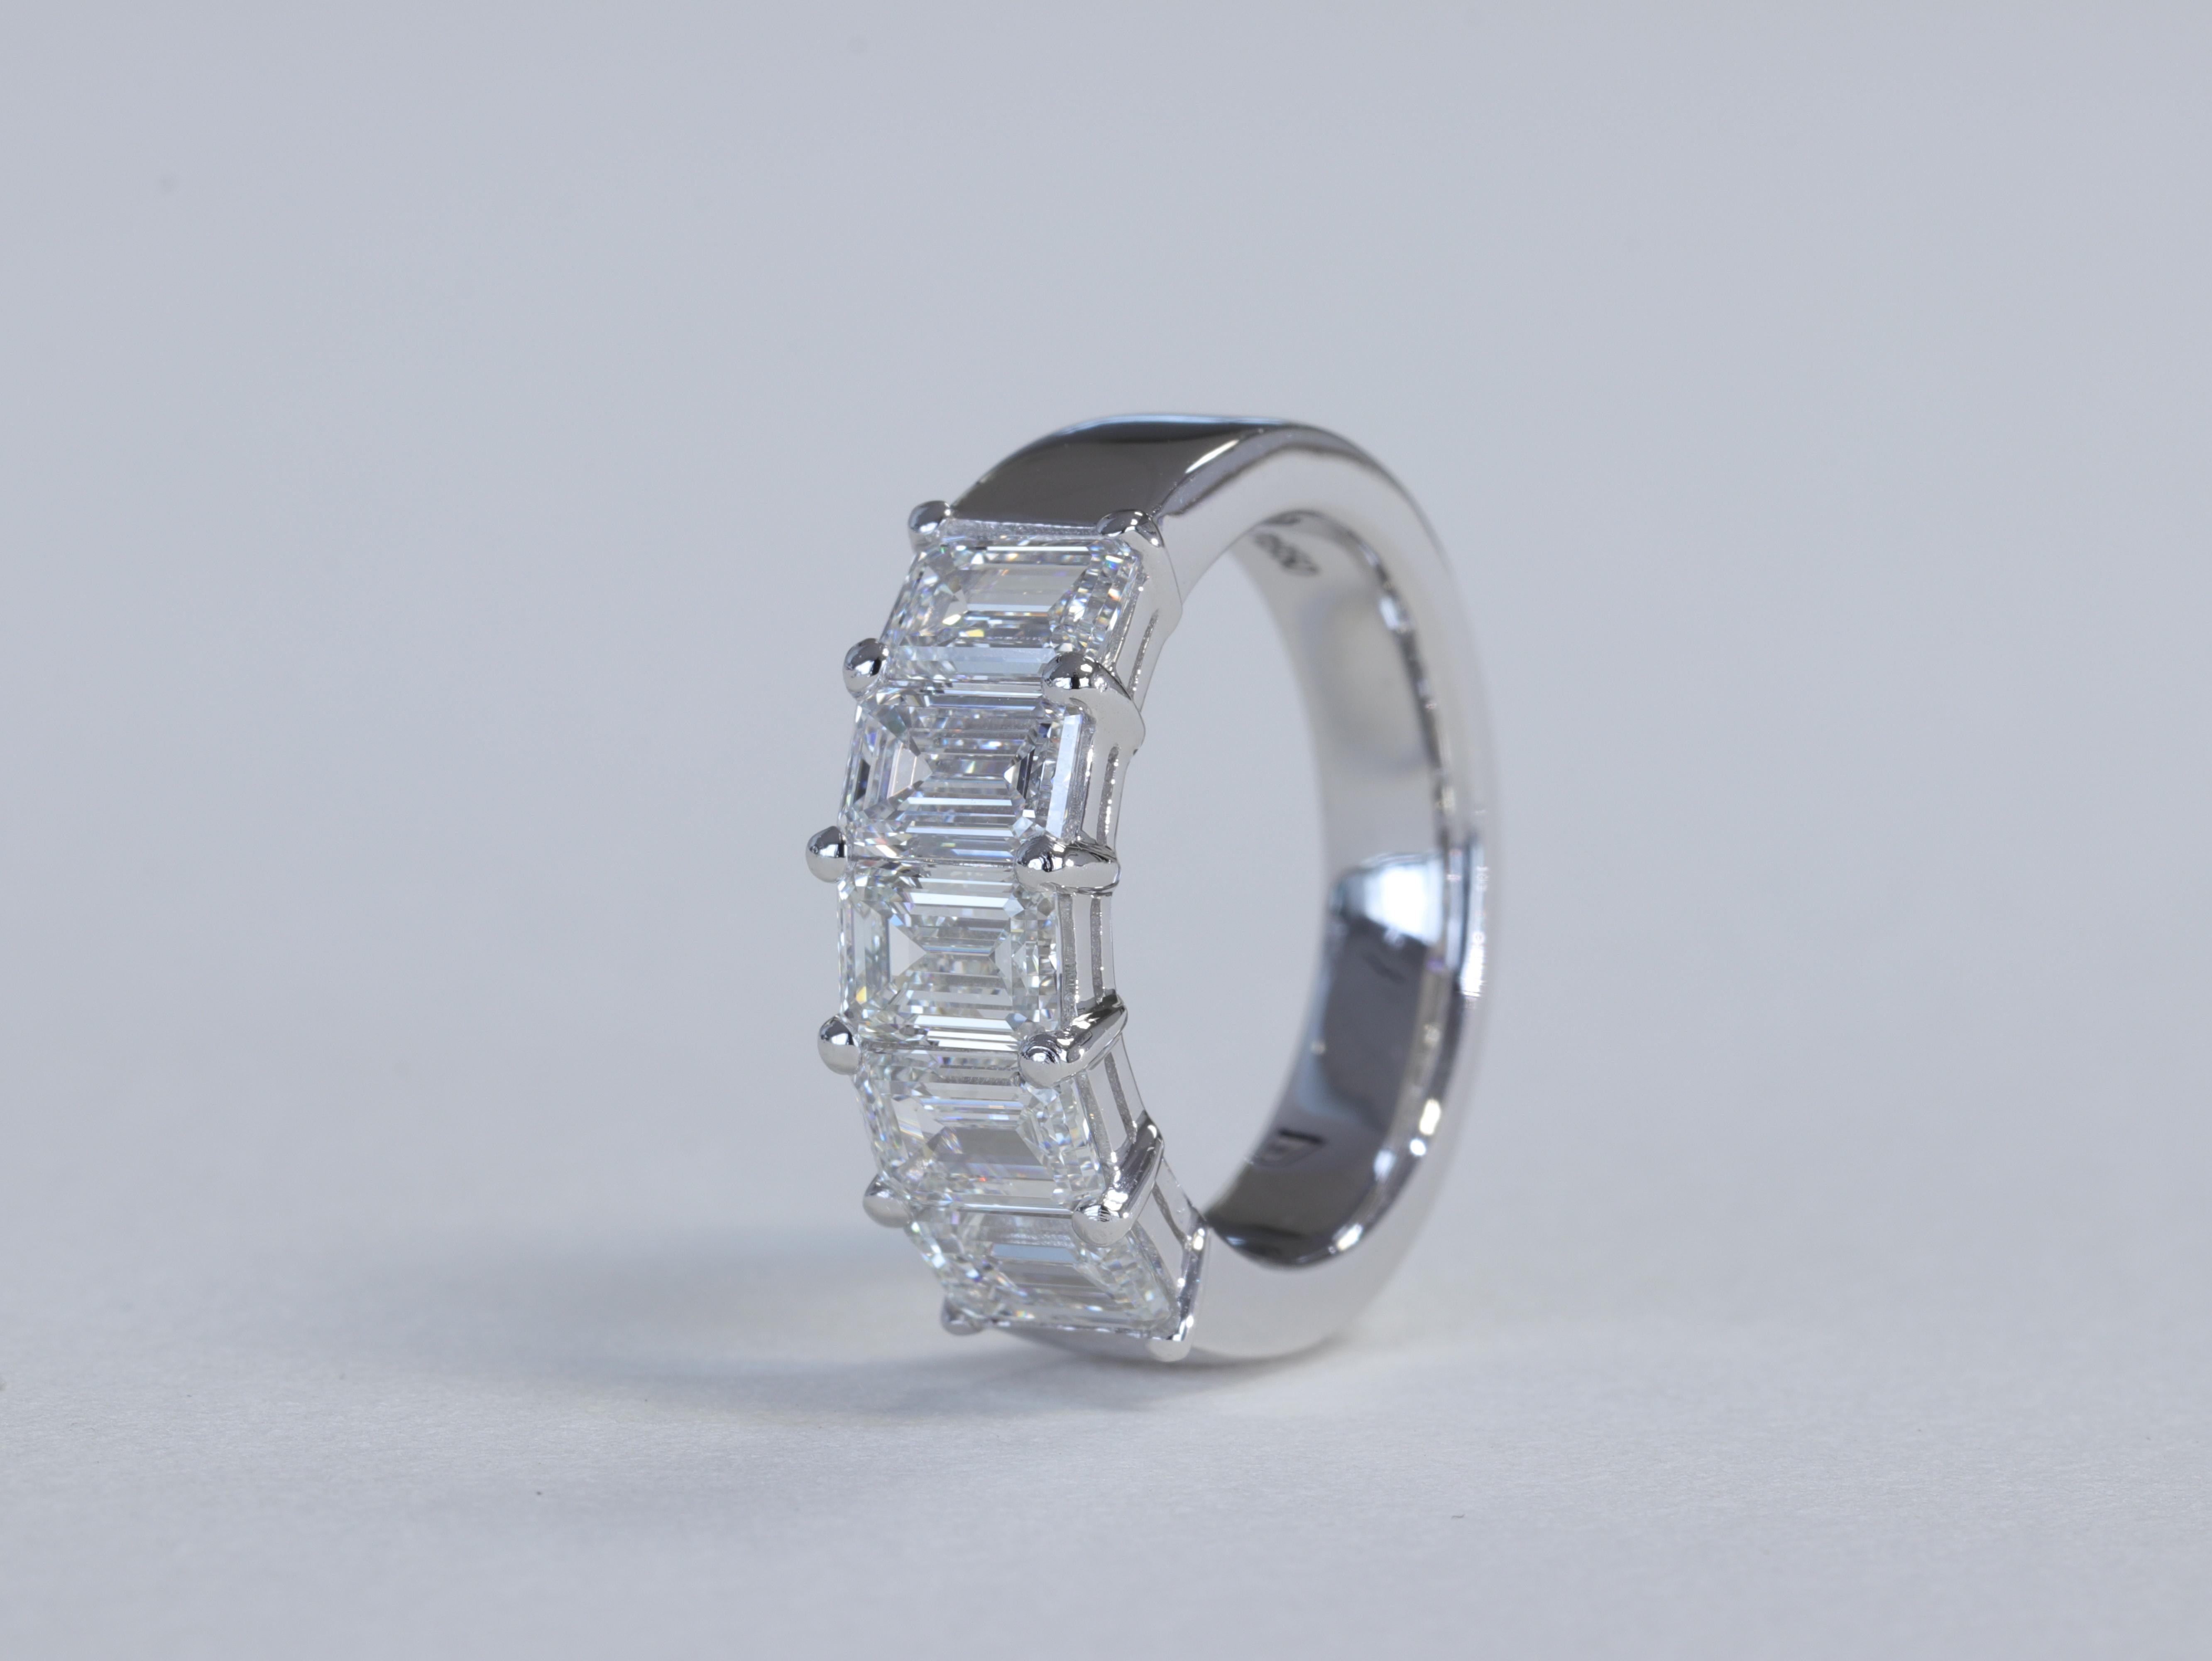 Smaragdschliff Diamant und Platin 5 Stein Jahrestag Hochzeit Band Ring GIA

Mit 2,54 Karat D-F VVS-VS Diamanten im Smaragdschliff in Platin besetzt. 